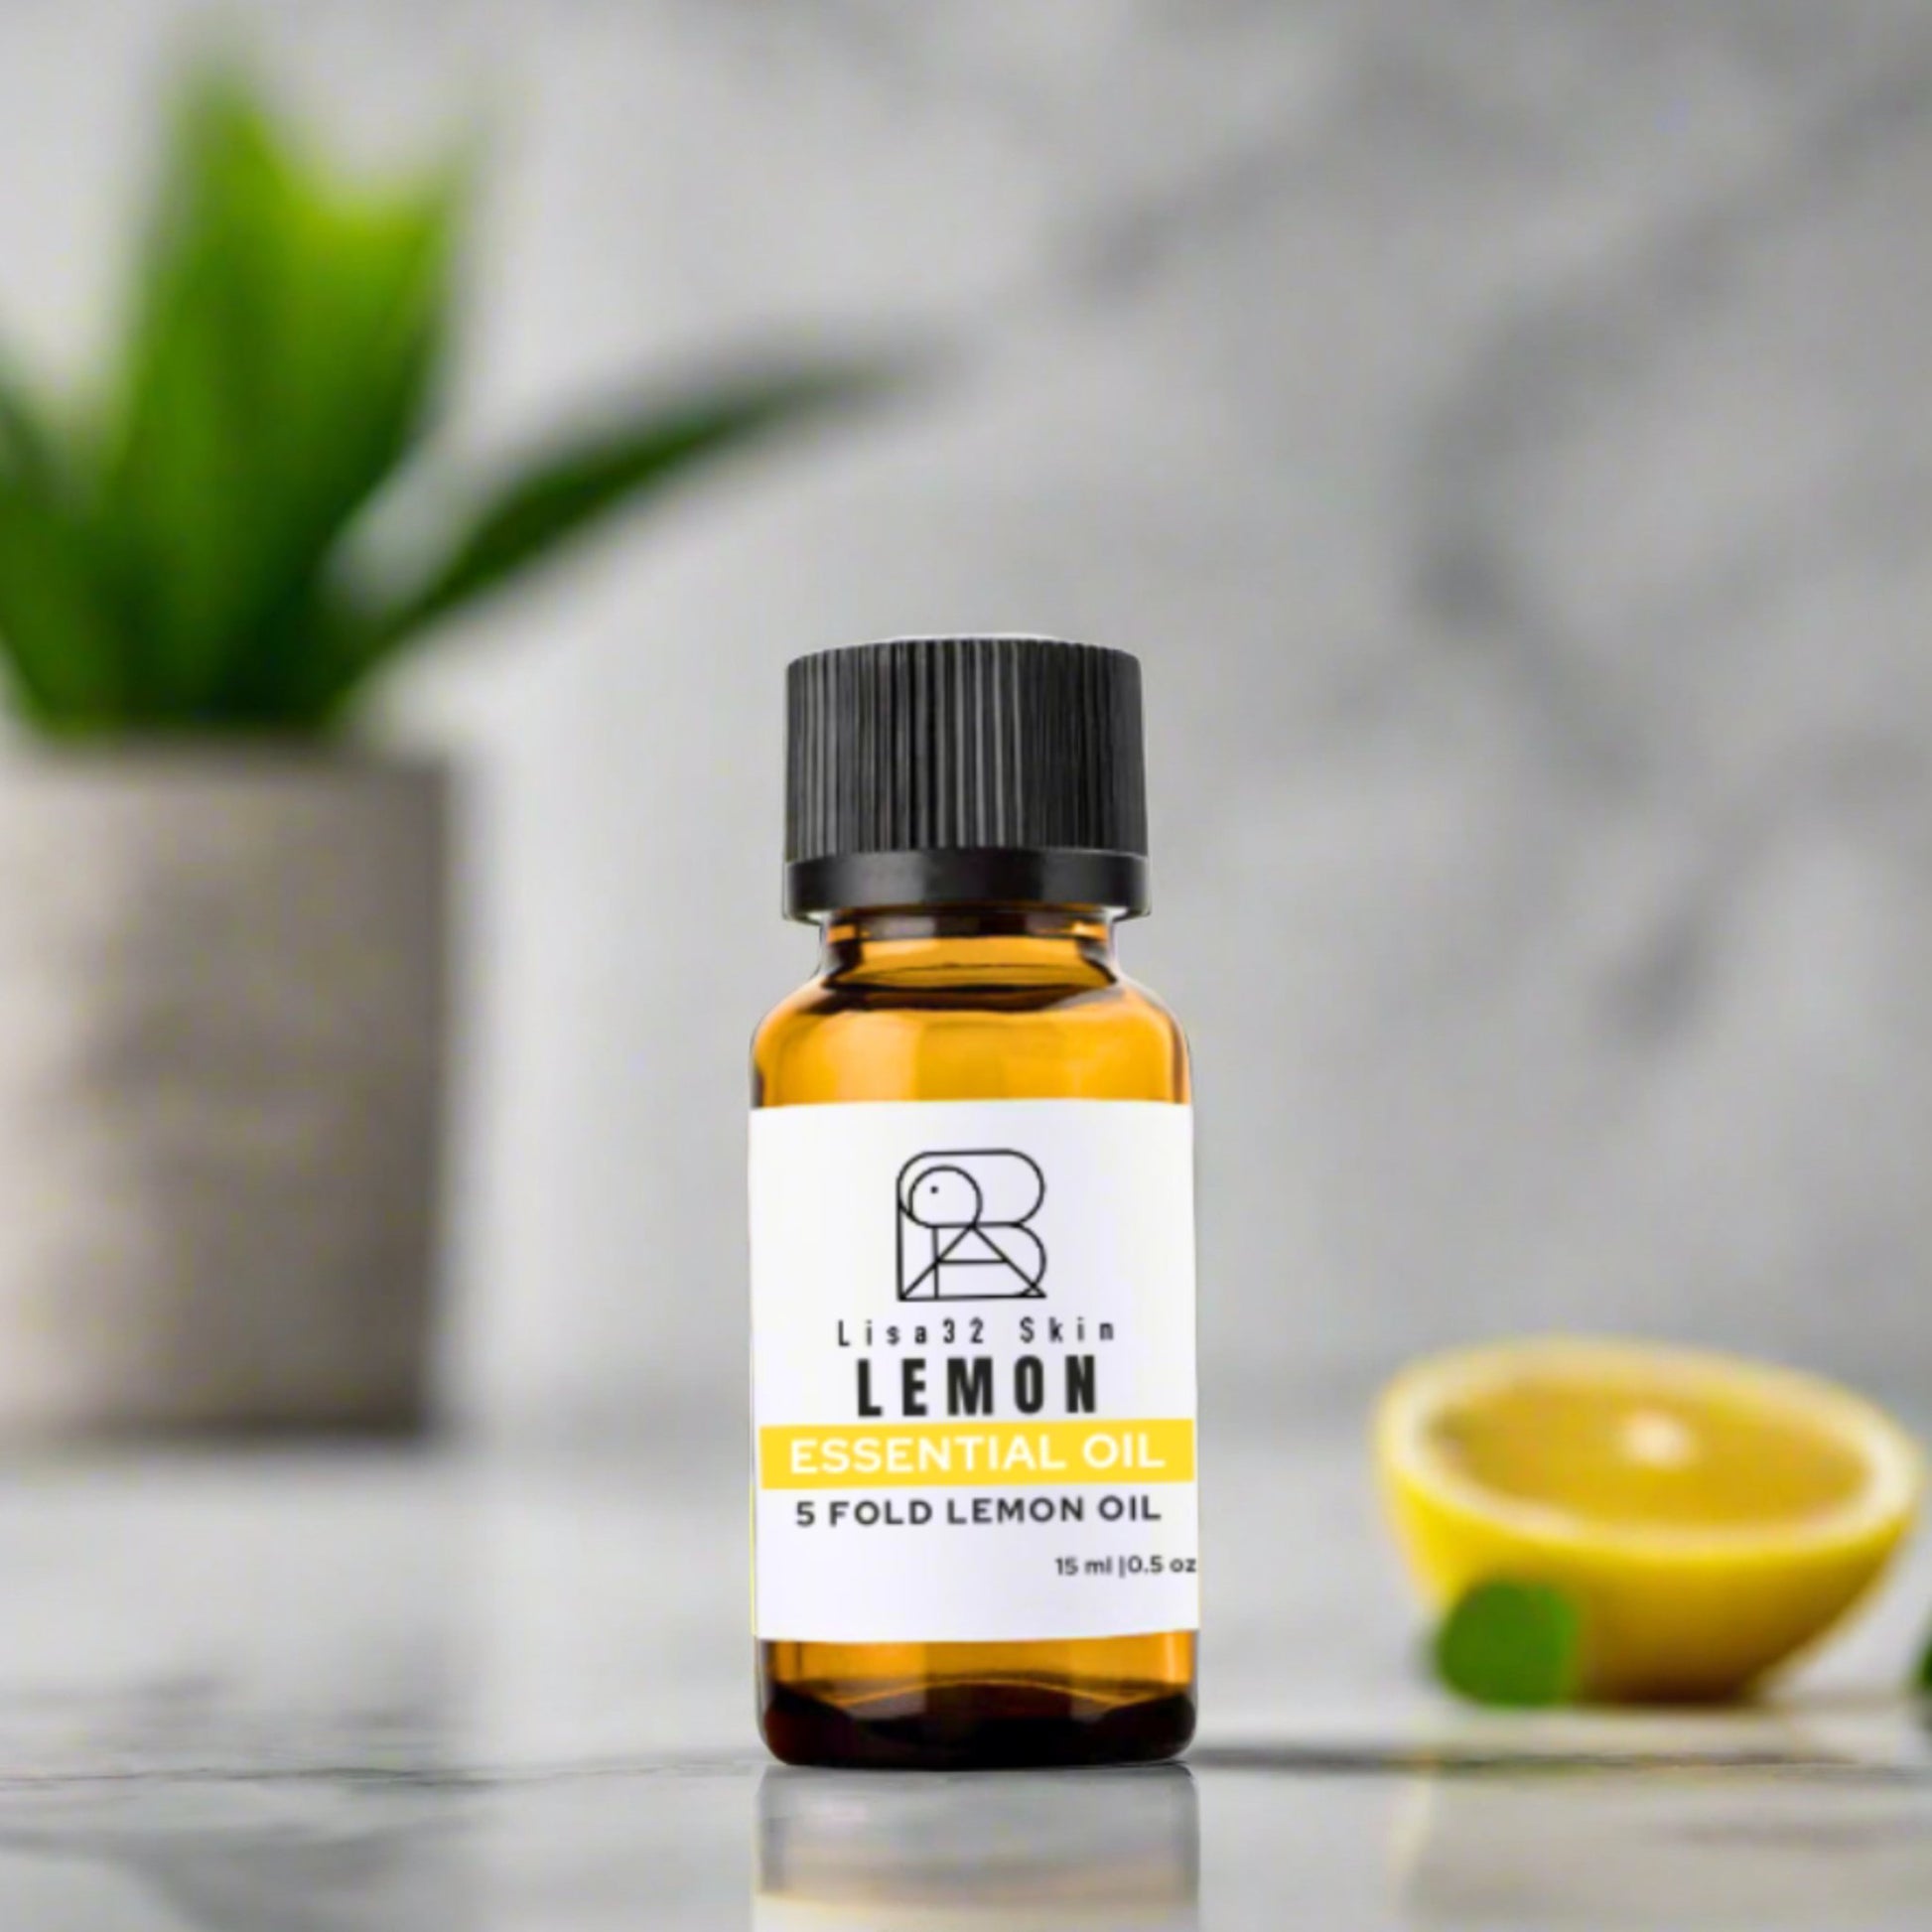 Essential Oil | Five Fold Lemon Lisa32